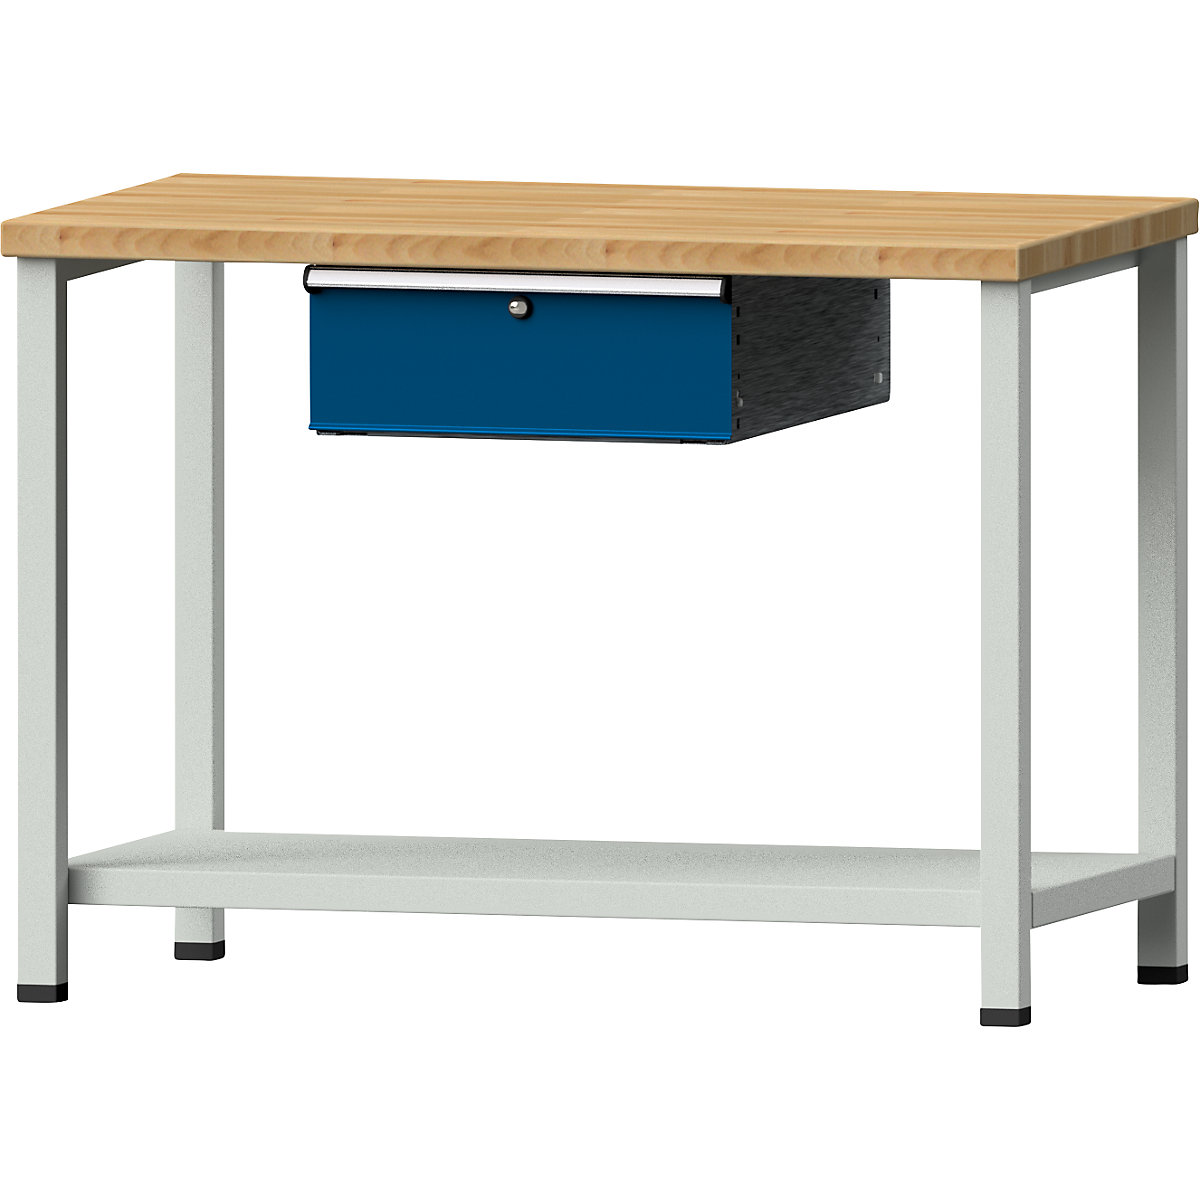 Kompaktowy stół warsztatowy - ANKE